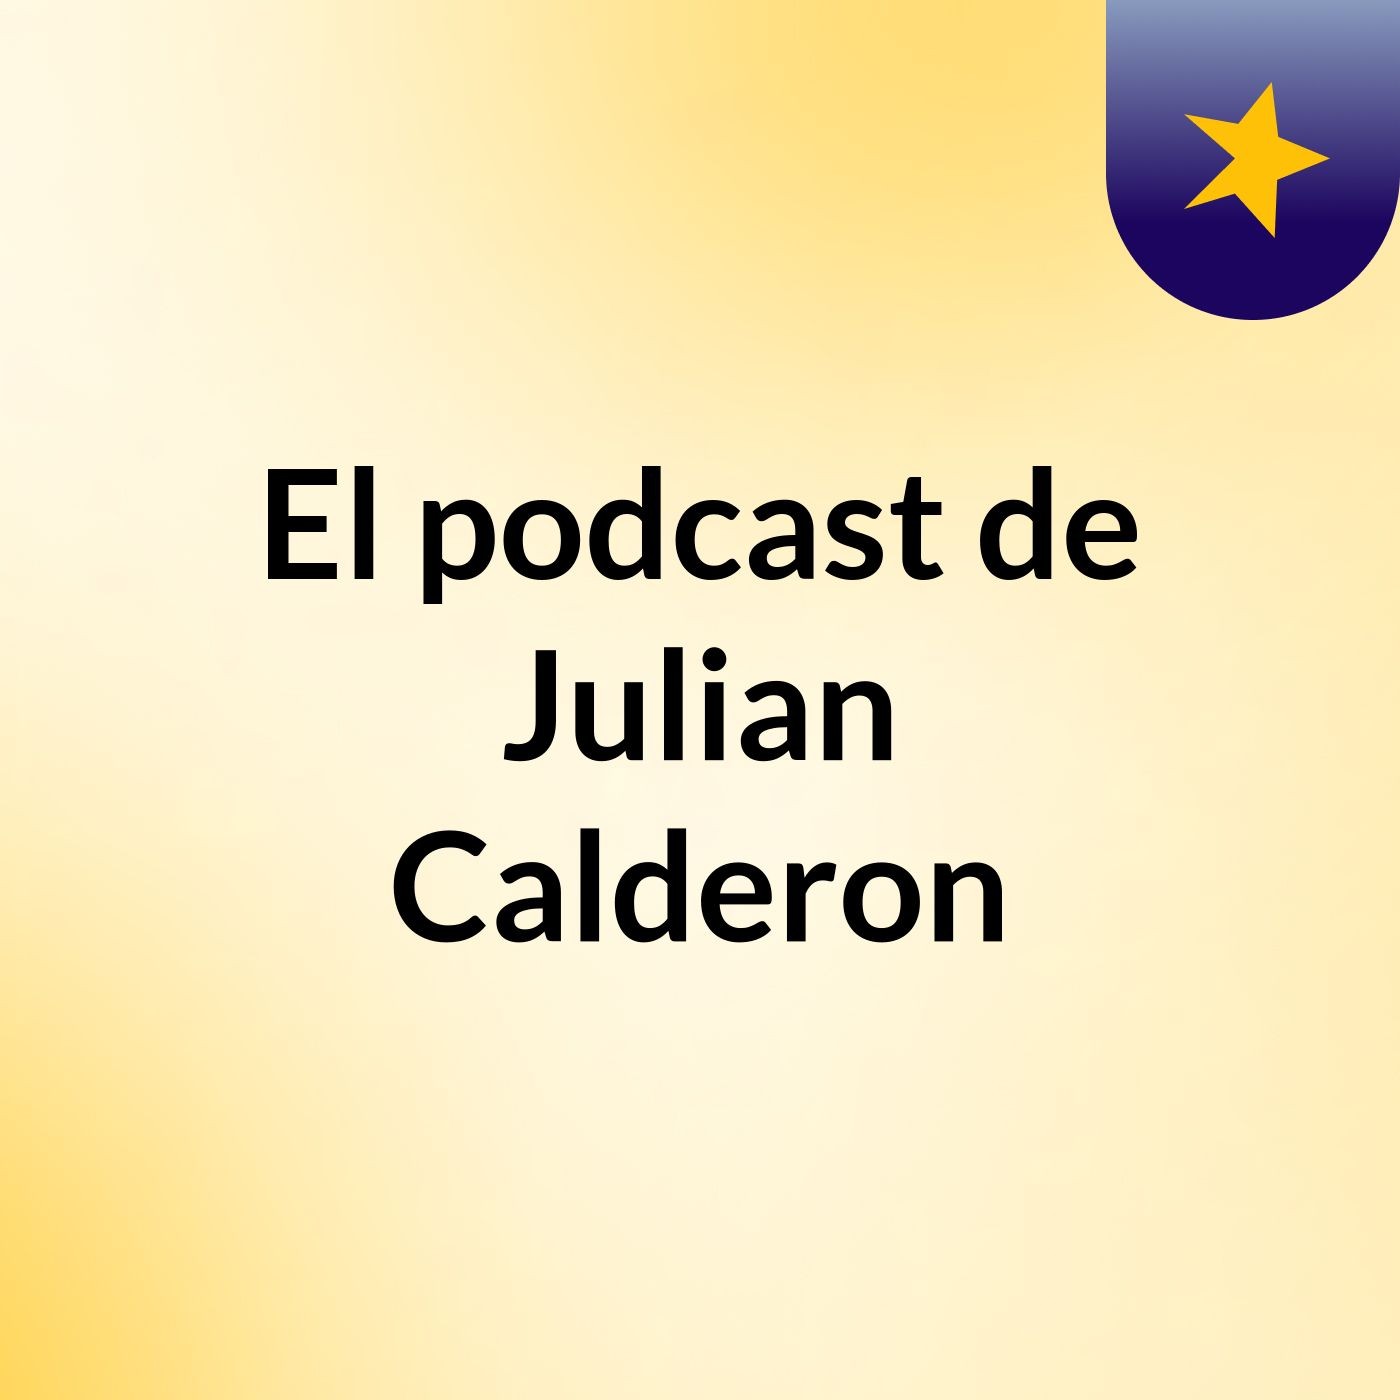 El podcast de Julian Calderon